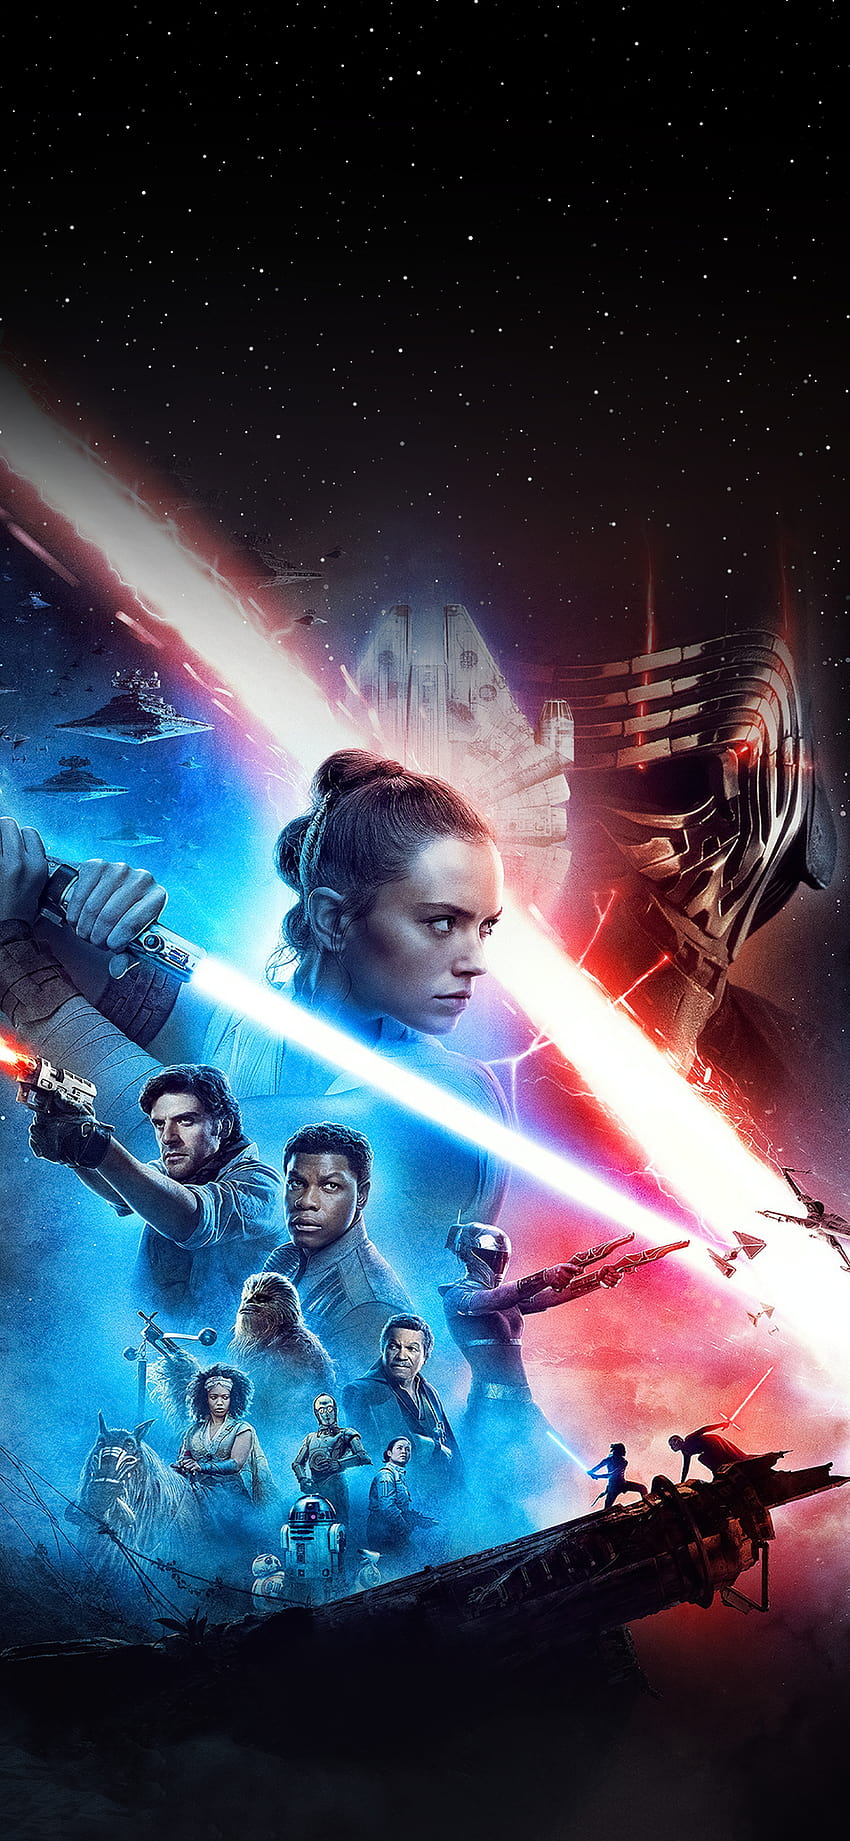 Star Wars The Rise Of Skywalker 영화 포스터, 스타워즈 영화 포스터 HD 전화 배경 화면